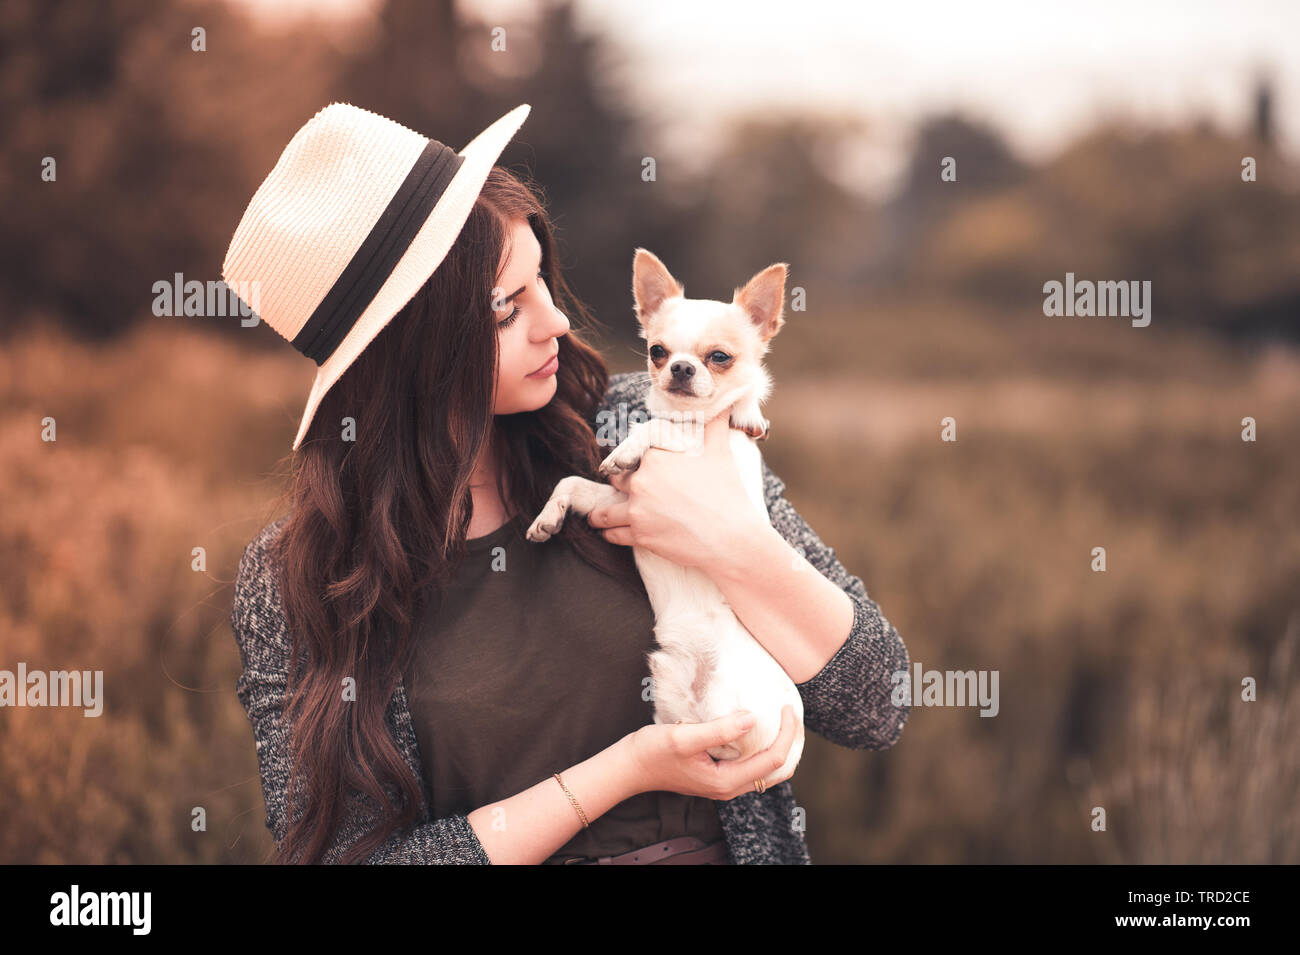 24-29 ans fille élégante holding chihuahua puppy wearing hat d'été à l'extérieur. L'amitié. 20s. Banque D'Images